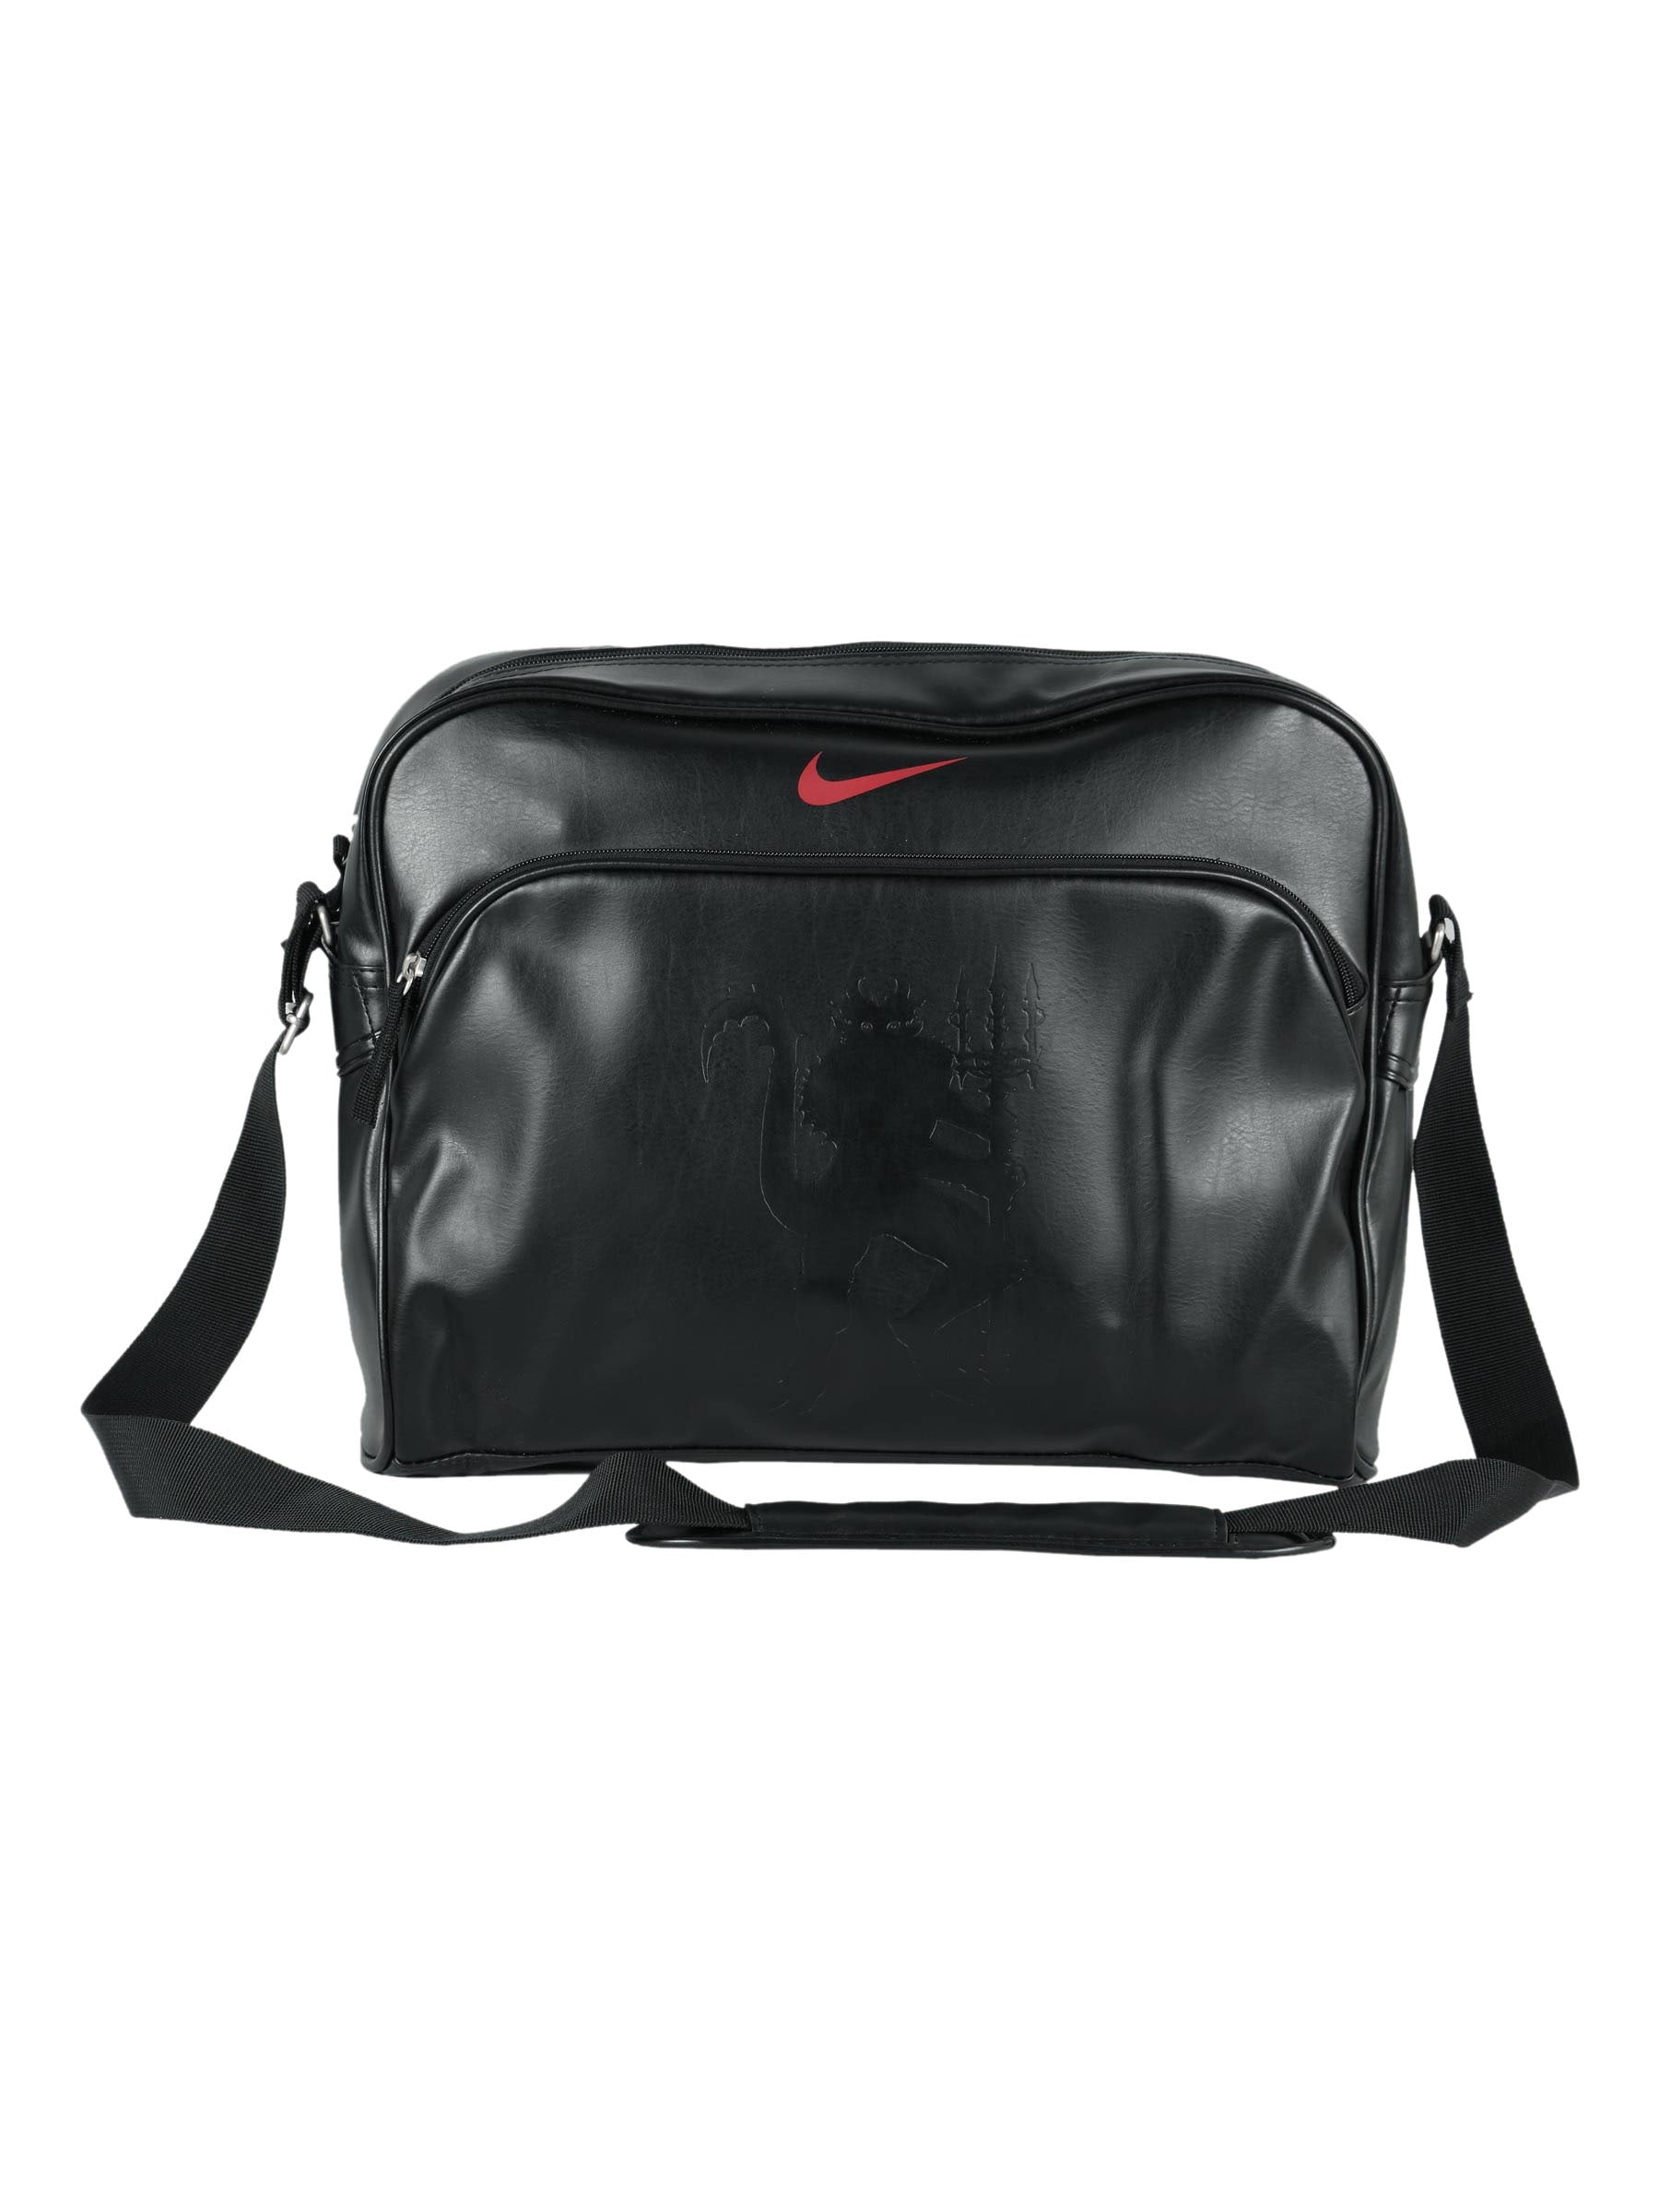 Nike Unisex Allegian Black Laptop Bag